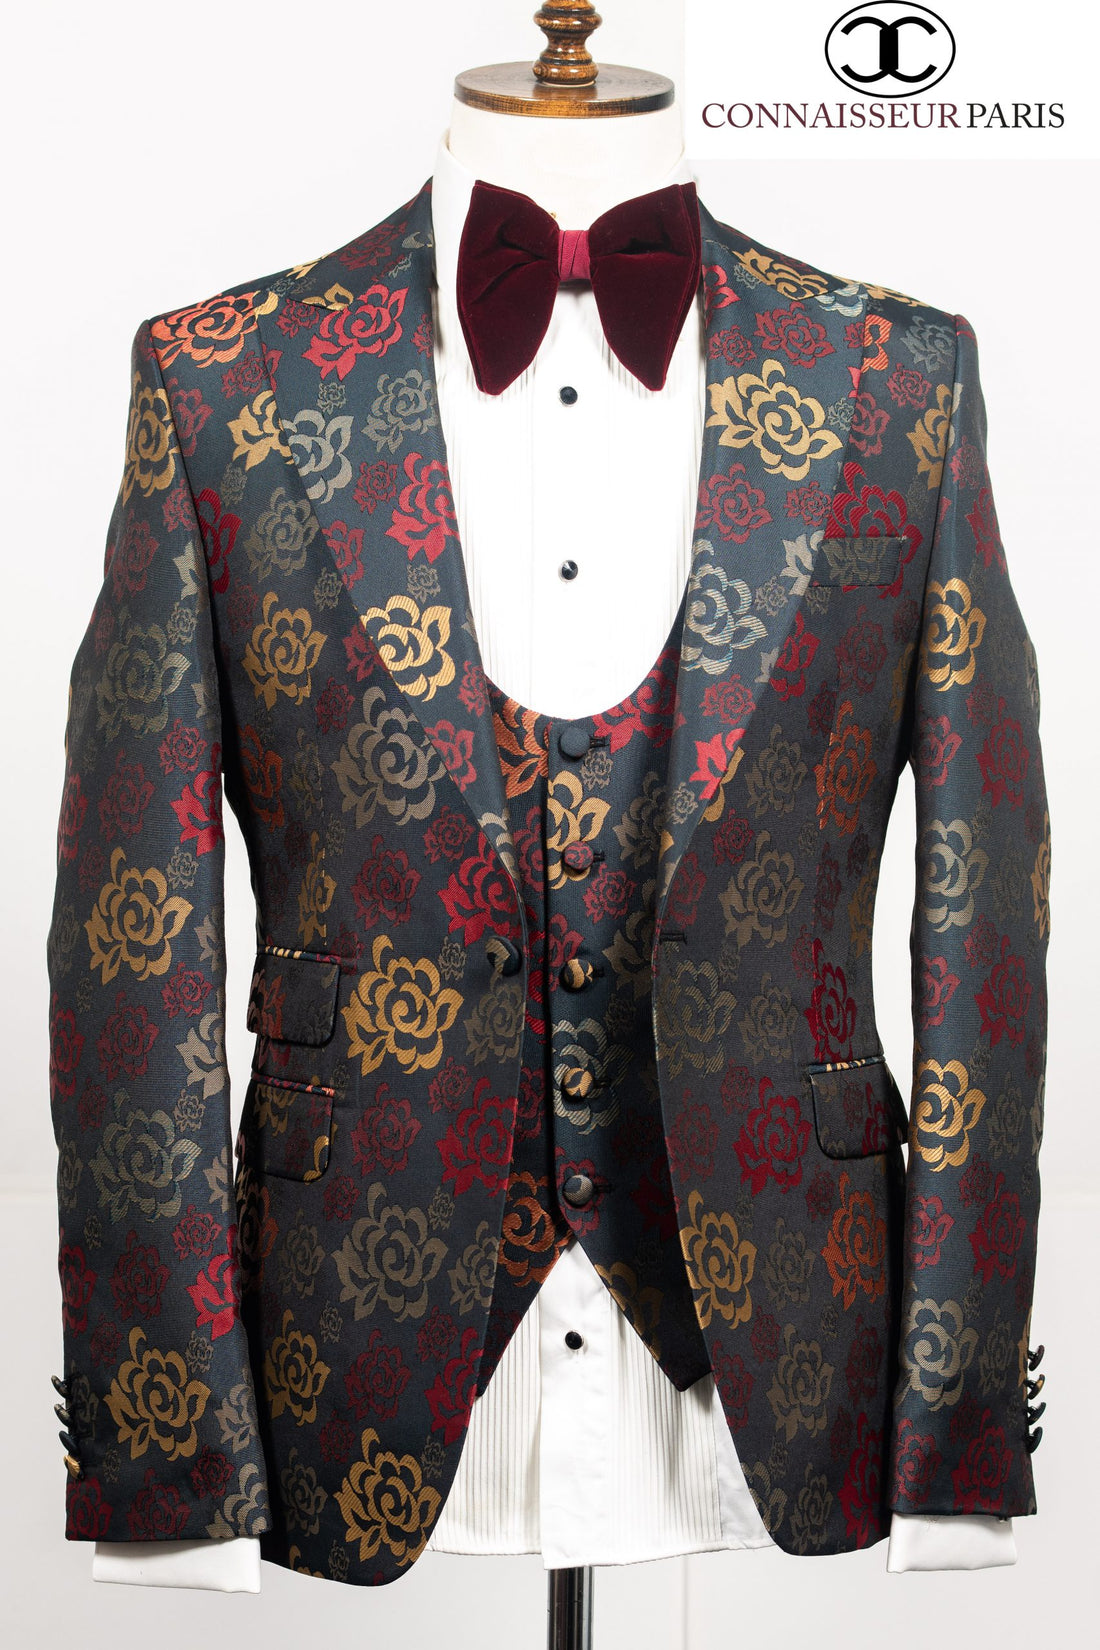 Connaisseur - Multi Color floral pattern 3-piece peaked lapel slim fit blazer with U vest